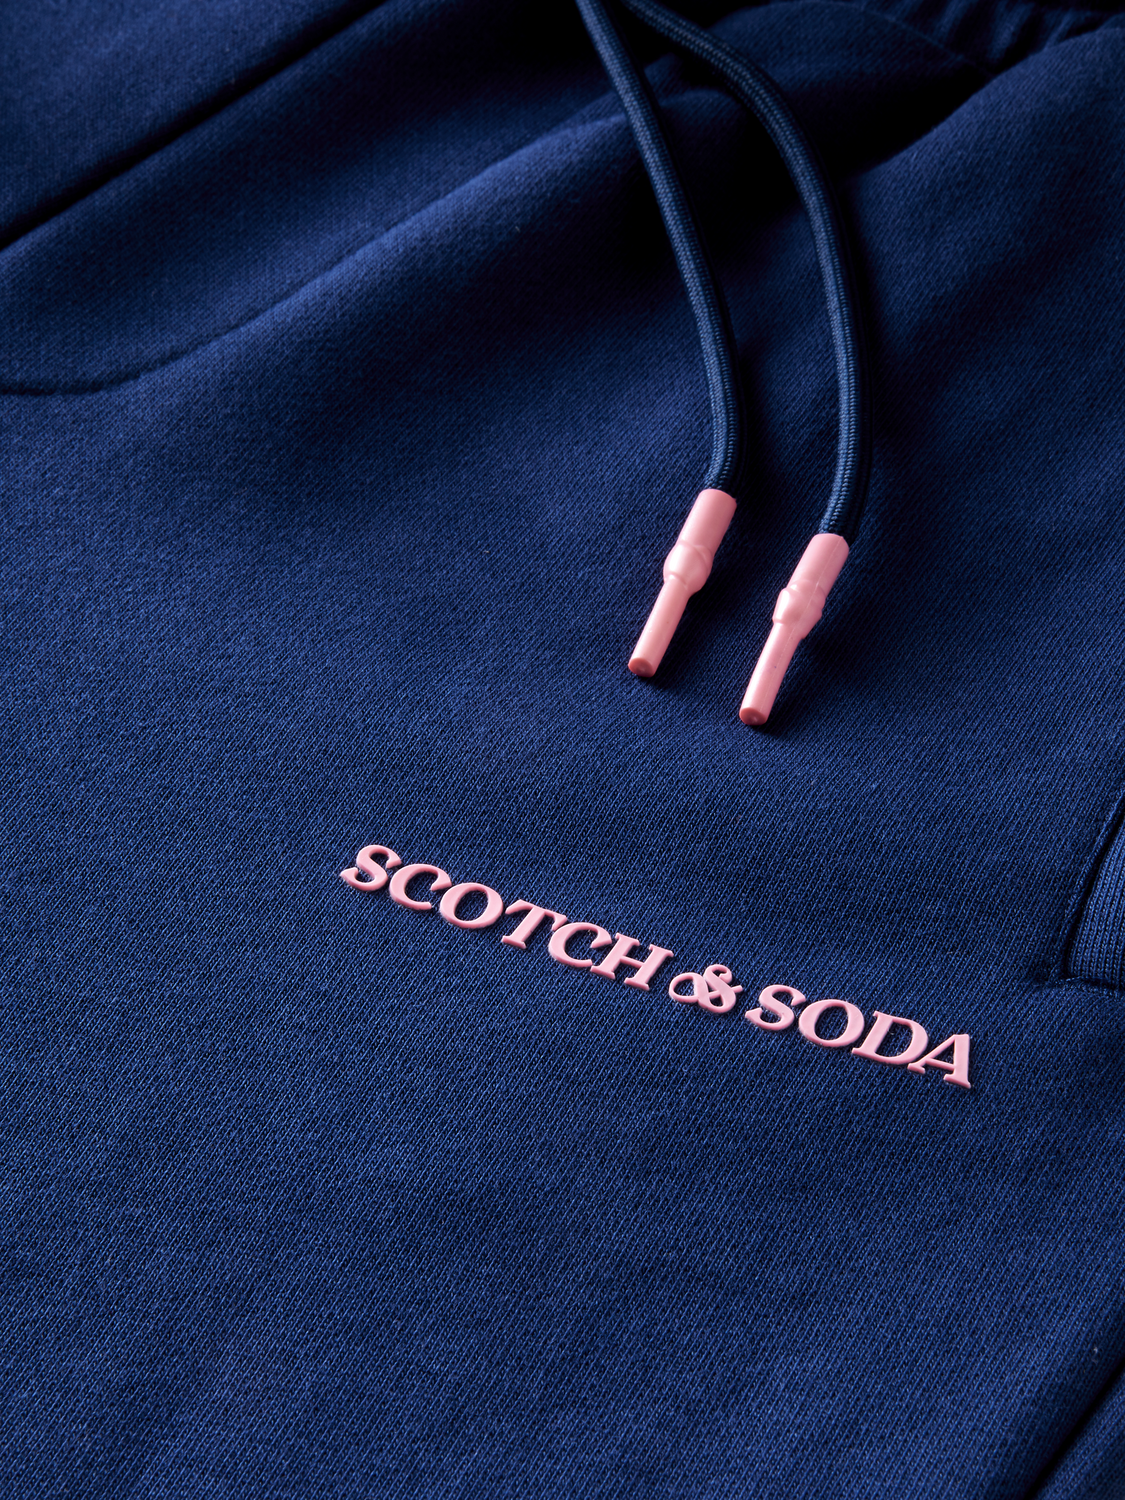 Scotch and Soda organic cotton sweatpants